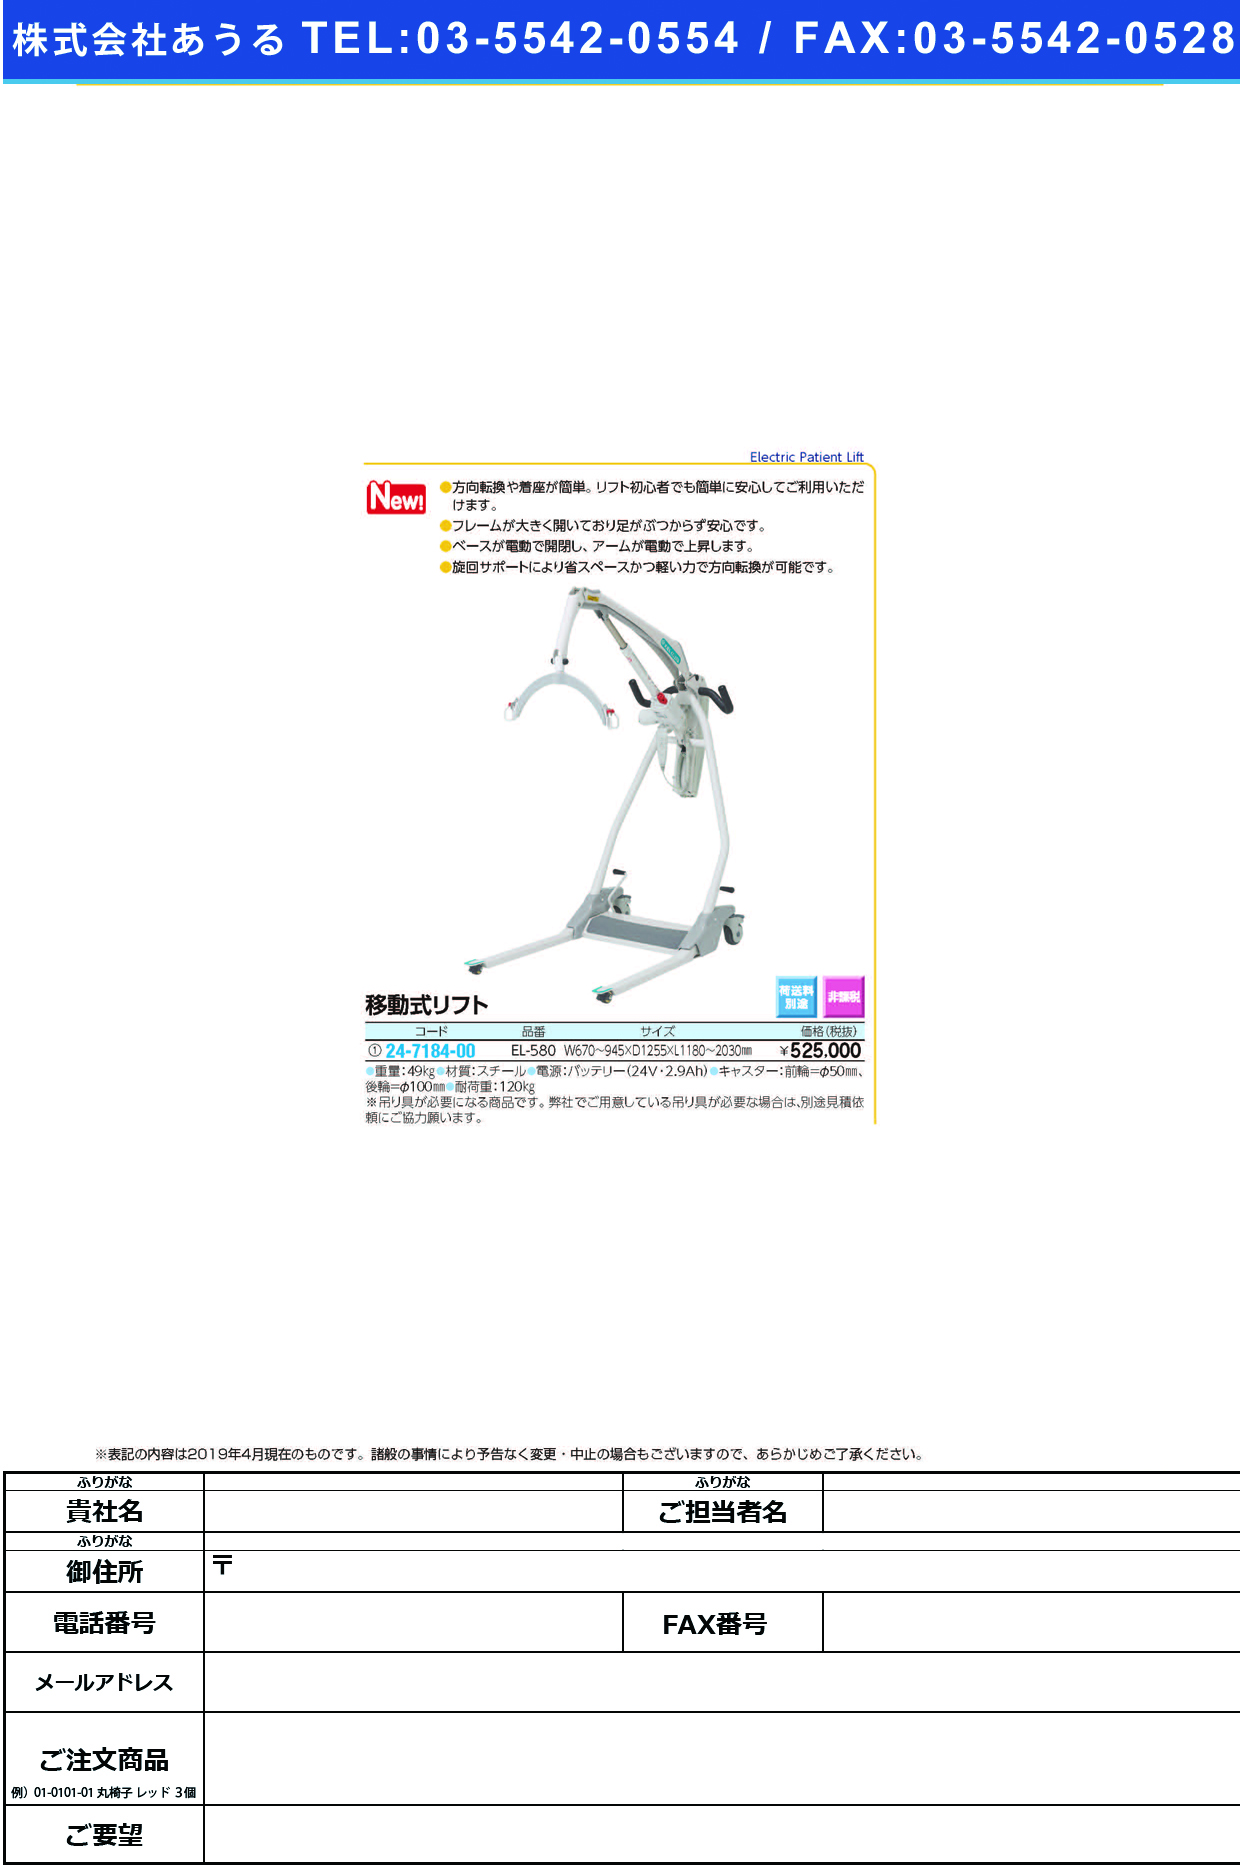 (24-7184-00)移動式リフトEL-580 ｲﾄﾞｳｼｷﾘﾌﾄ(いうら)【1台単位】【2019年カタログ商品】